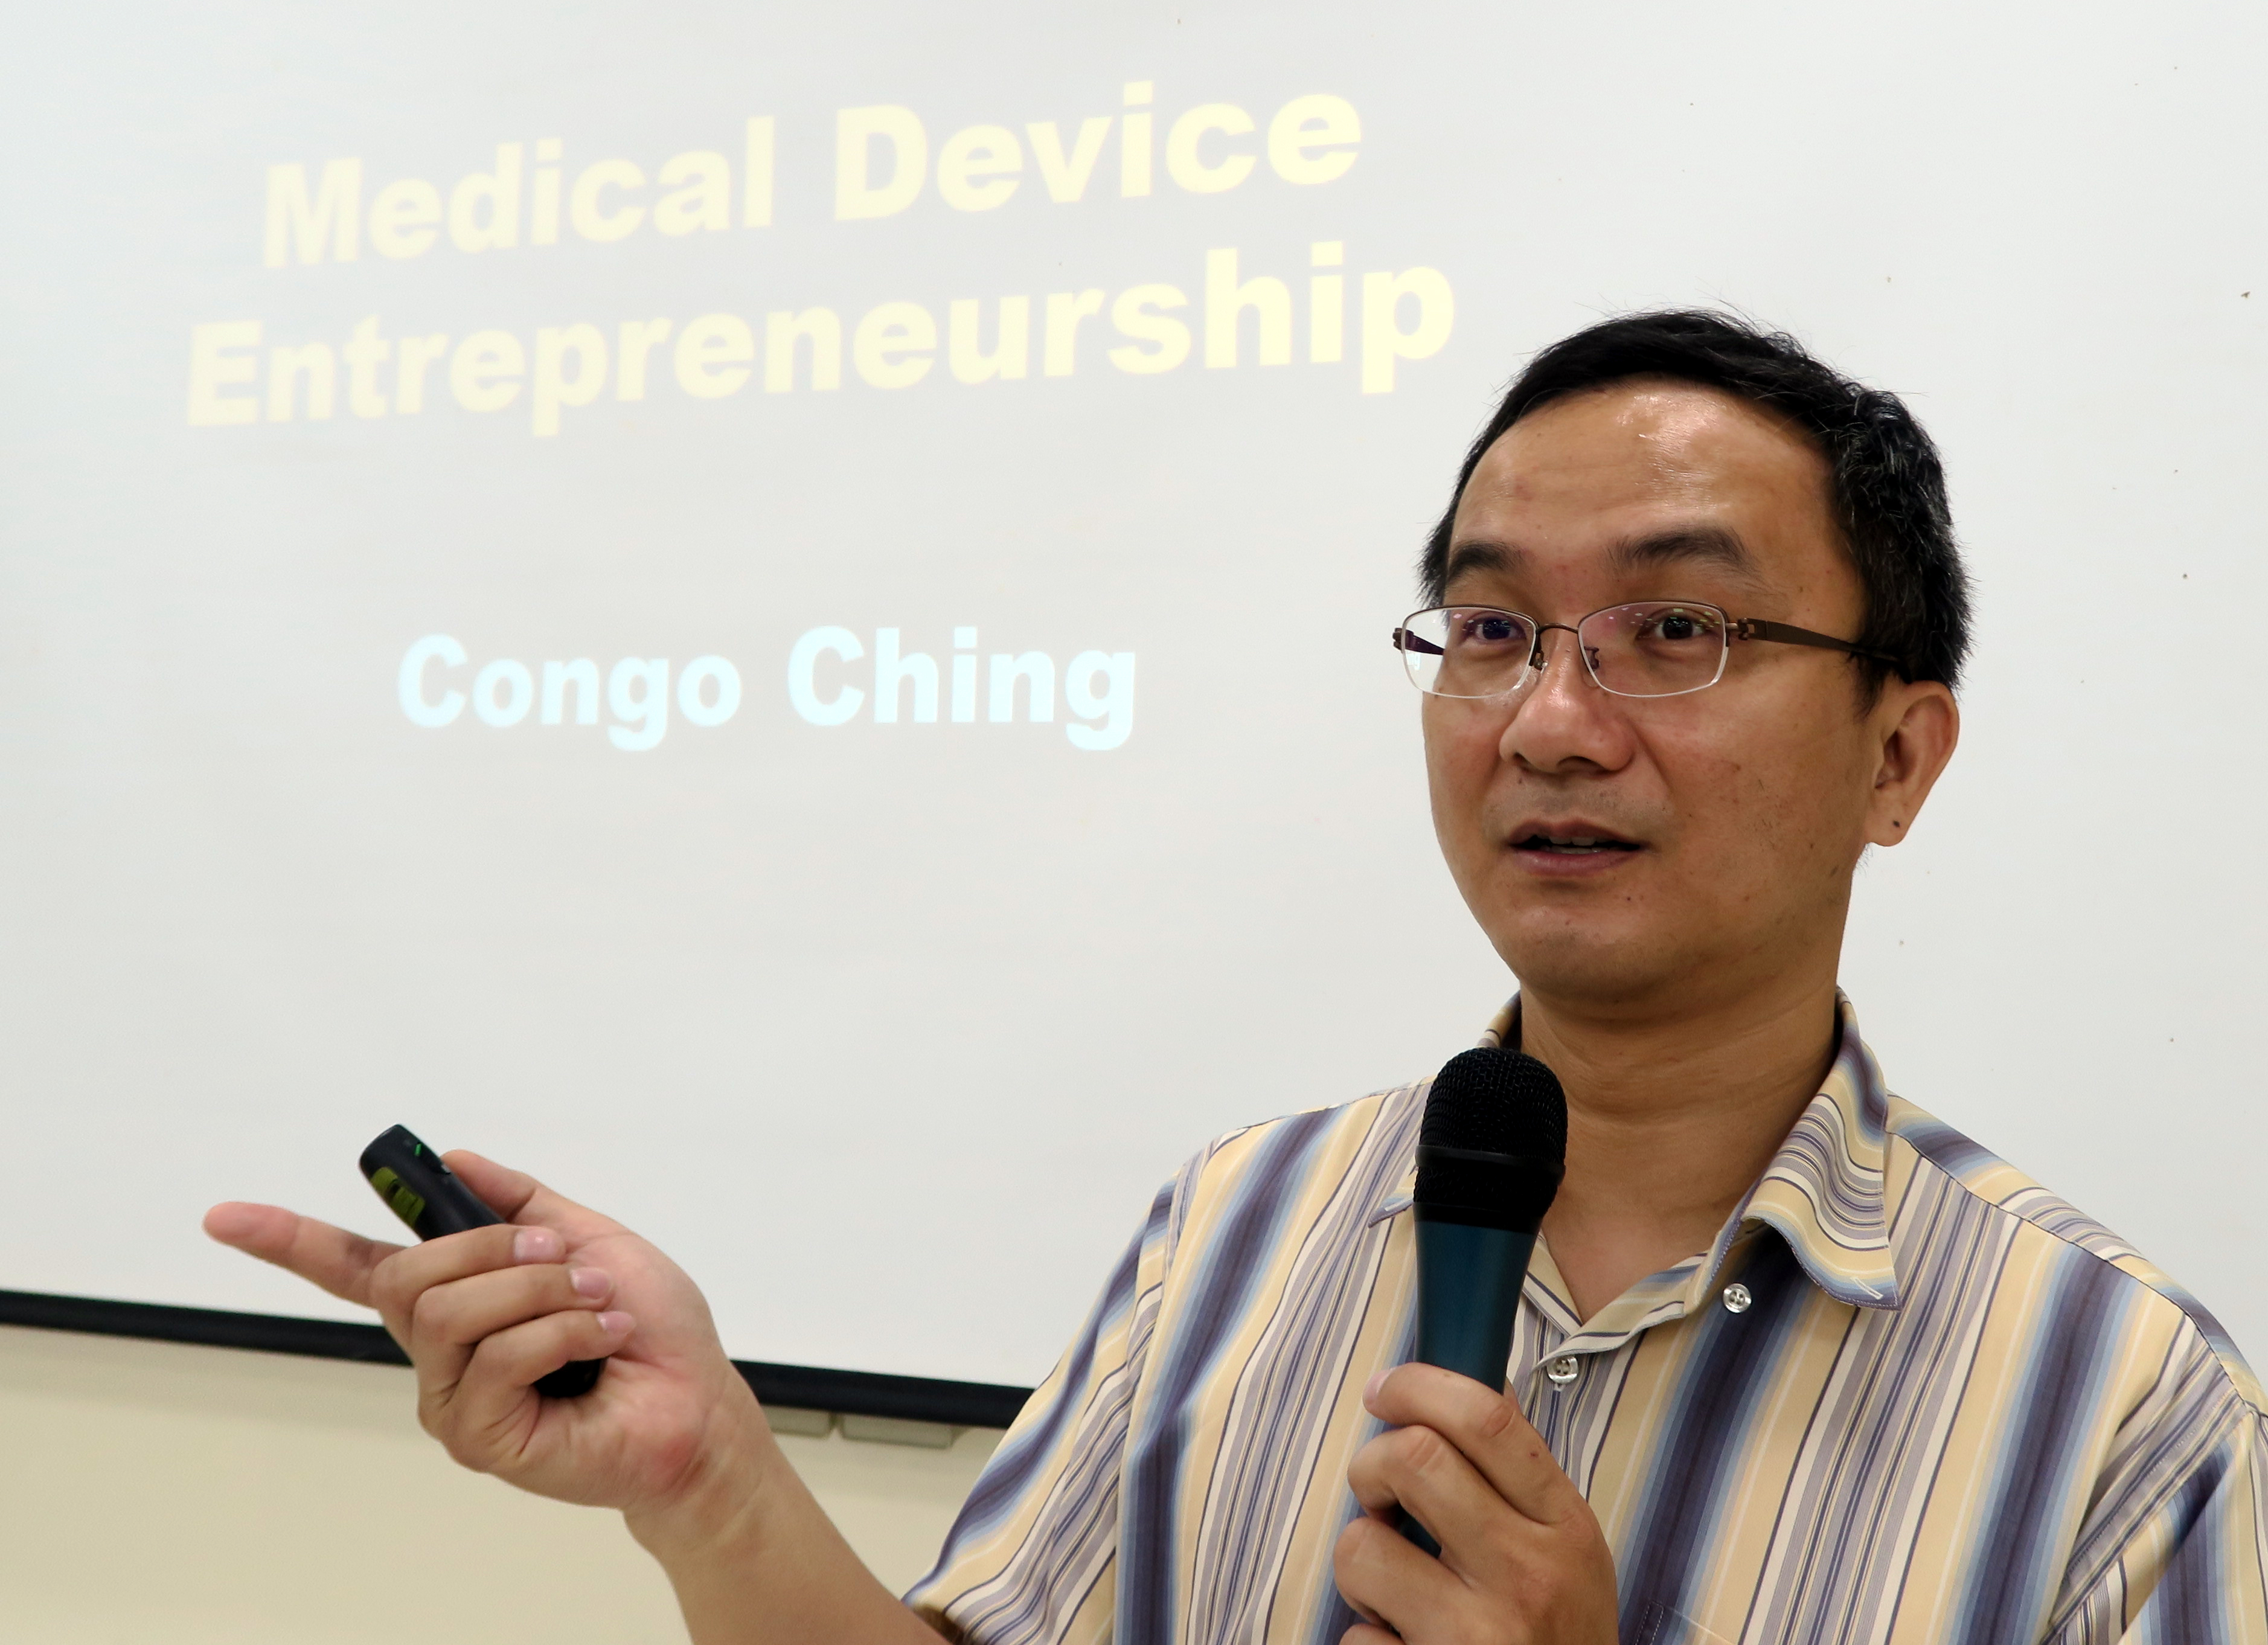 興大程德勝教授在亞大創業學程，分享醫療商品創業的經驗。